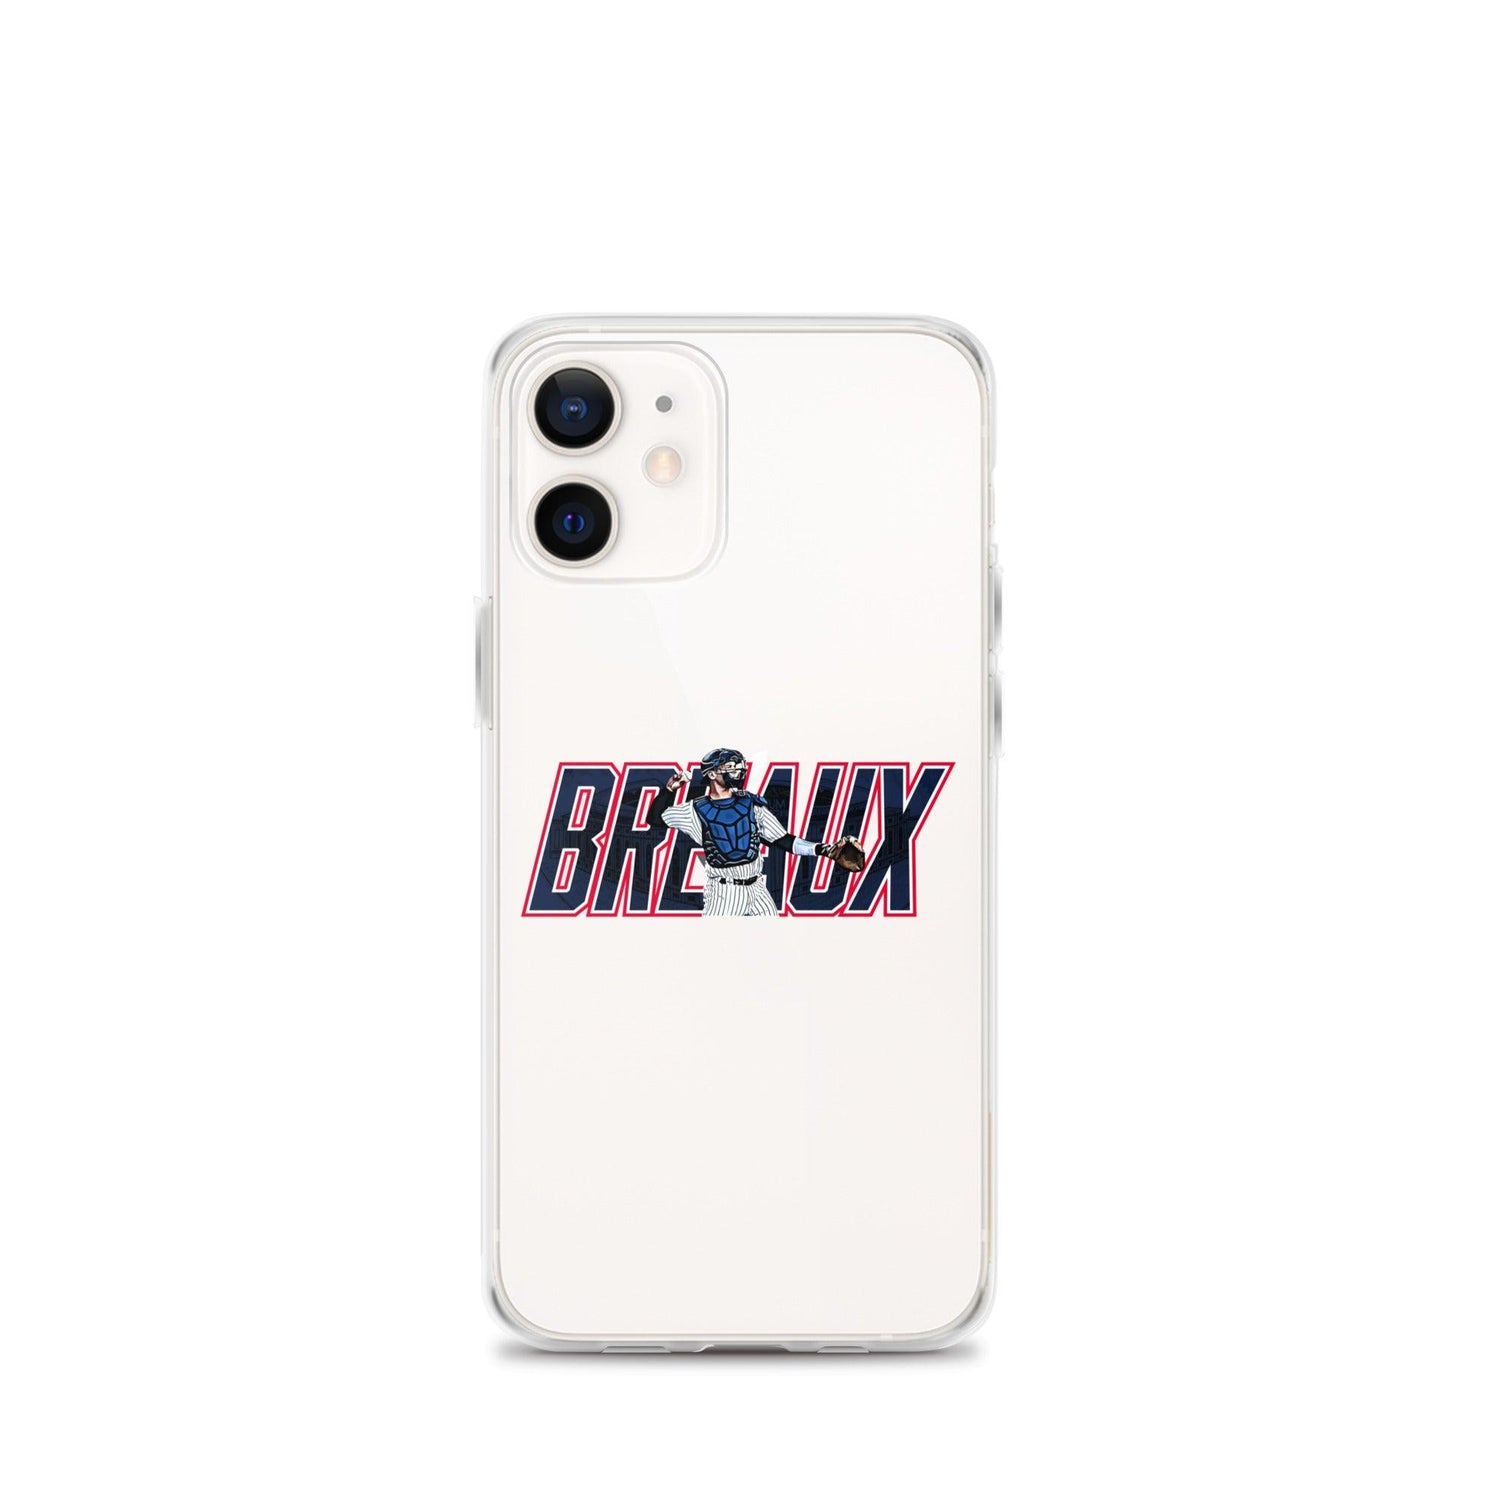 Josh Breaux "Throwback" iPhone Case - Fan Arch